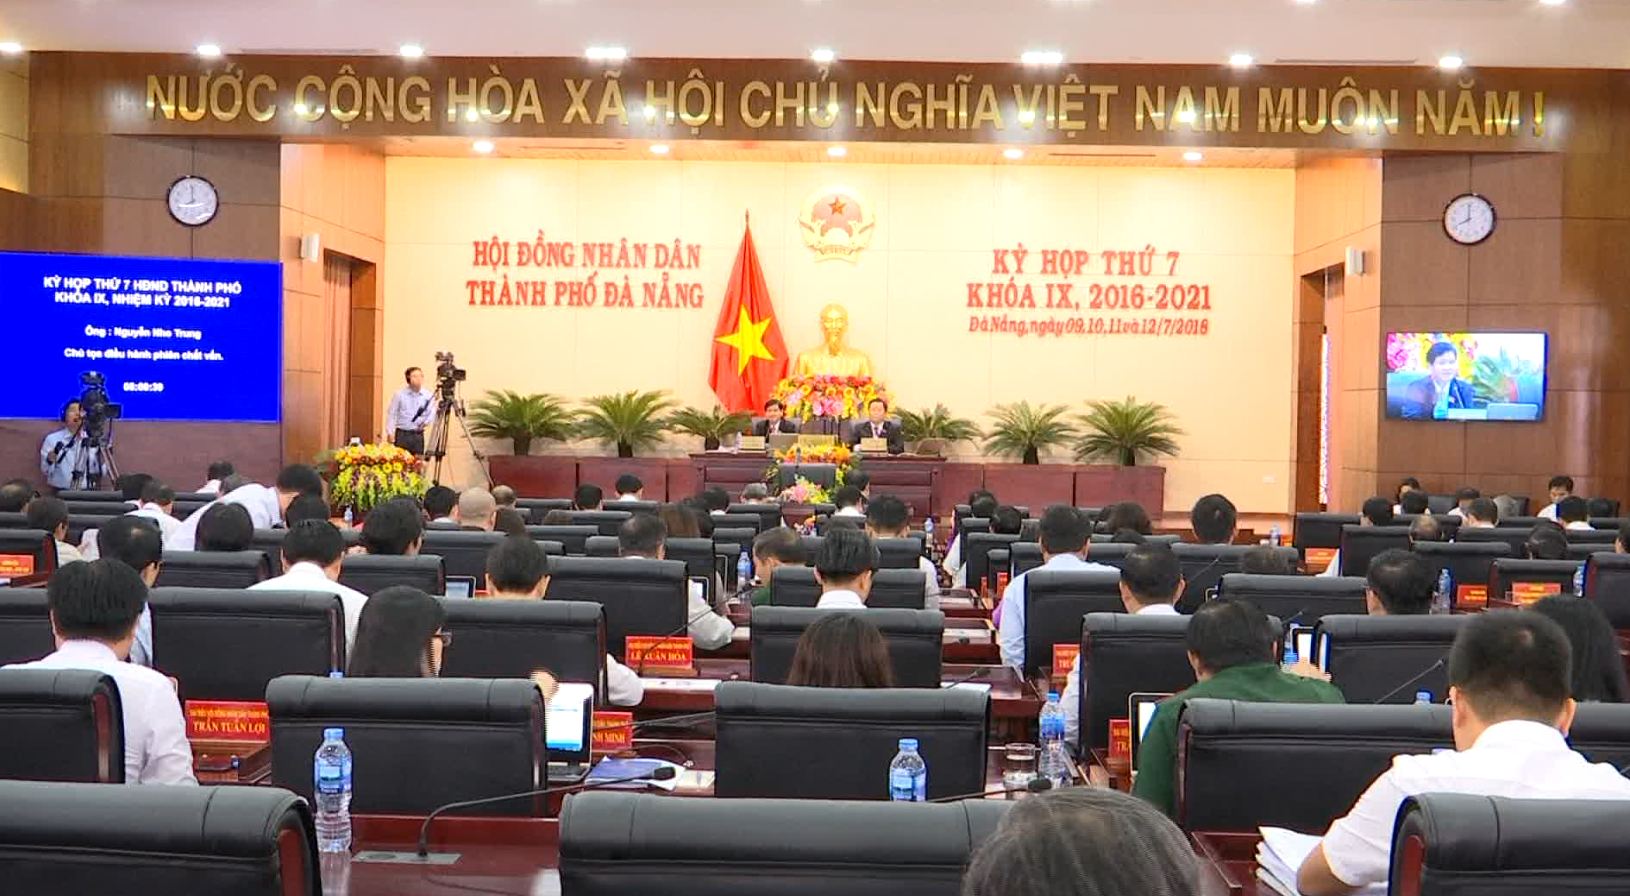 Thông báo về kỳ họp thứ 9 Hội đồng Nhân dân thành phố Đà Nẵng khóa IX